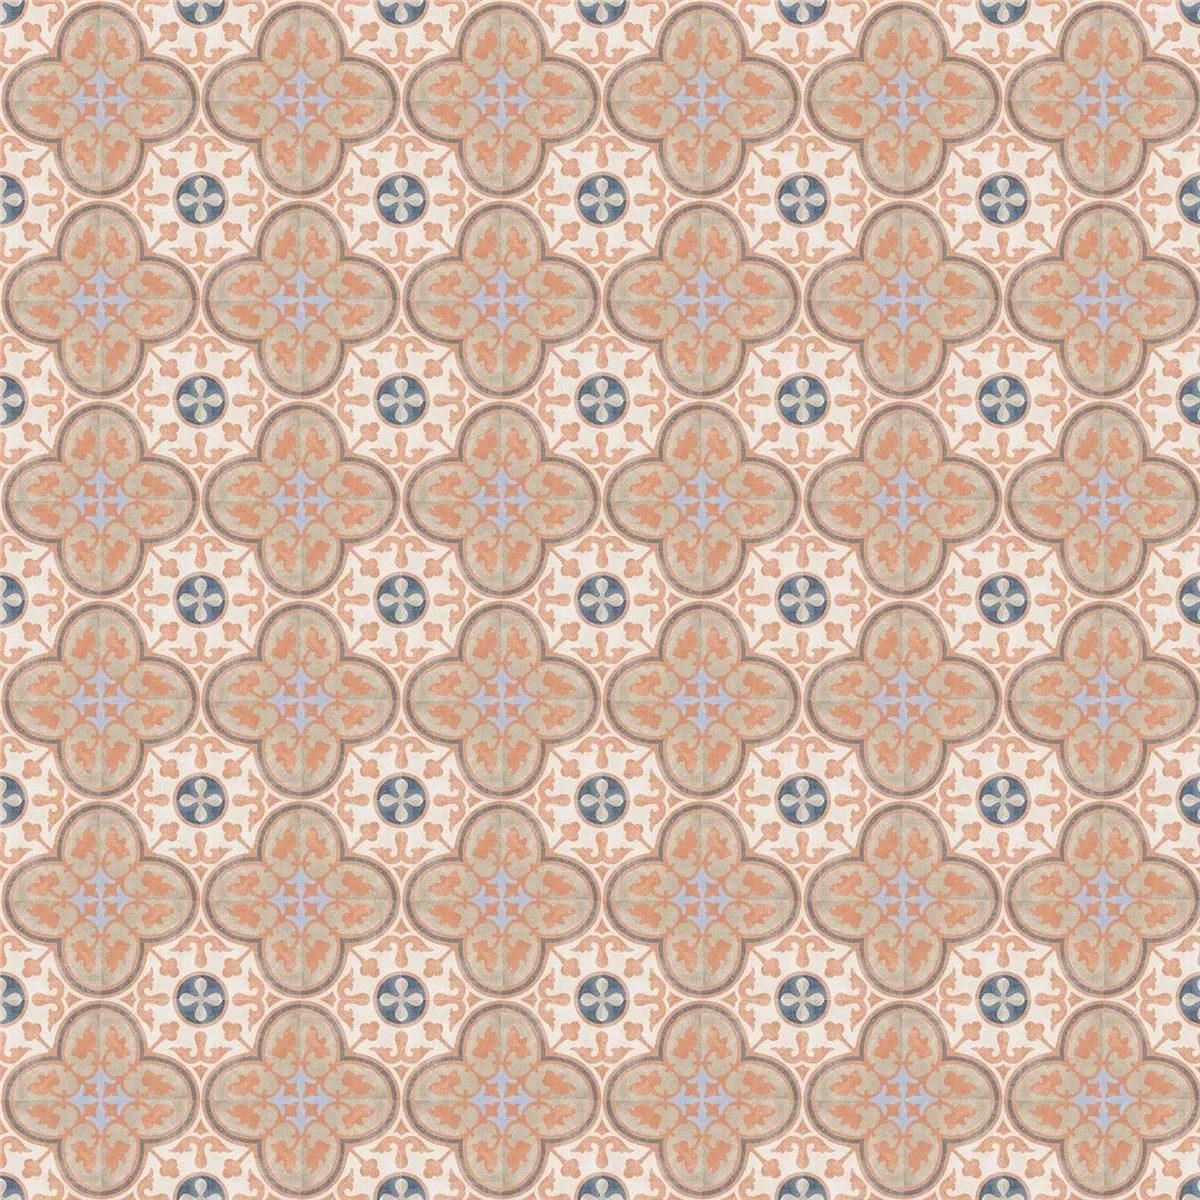 Sample Cement Tiles Retro Optic Gris Floor Tiles Manolo 18,6x18,6cm